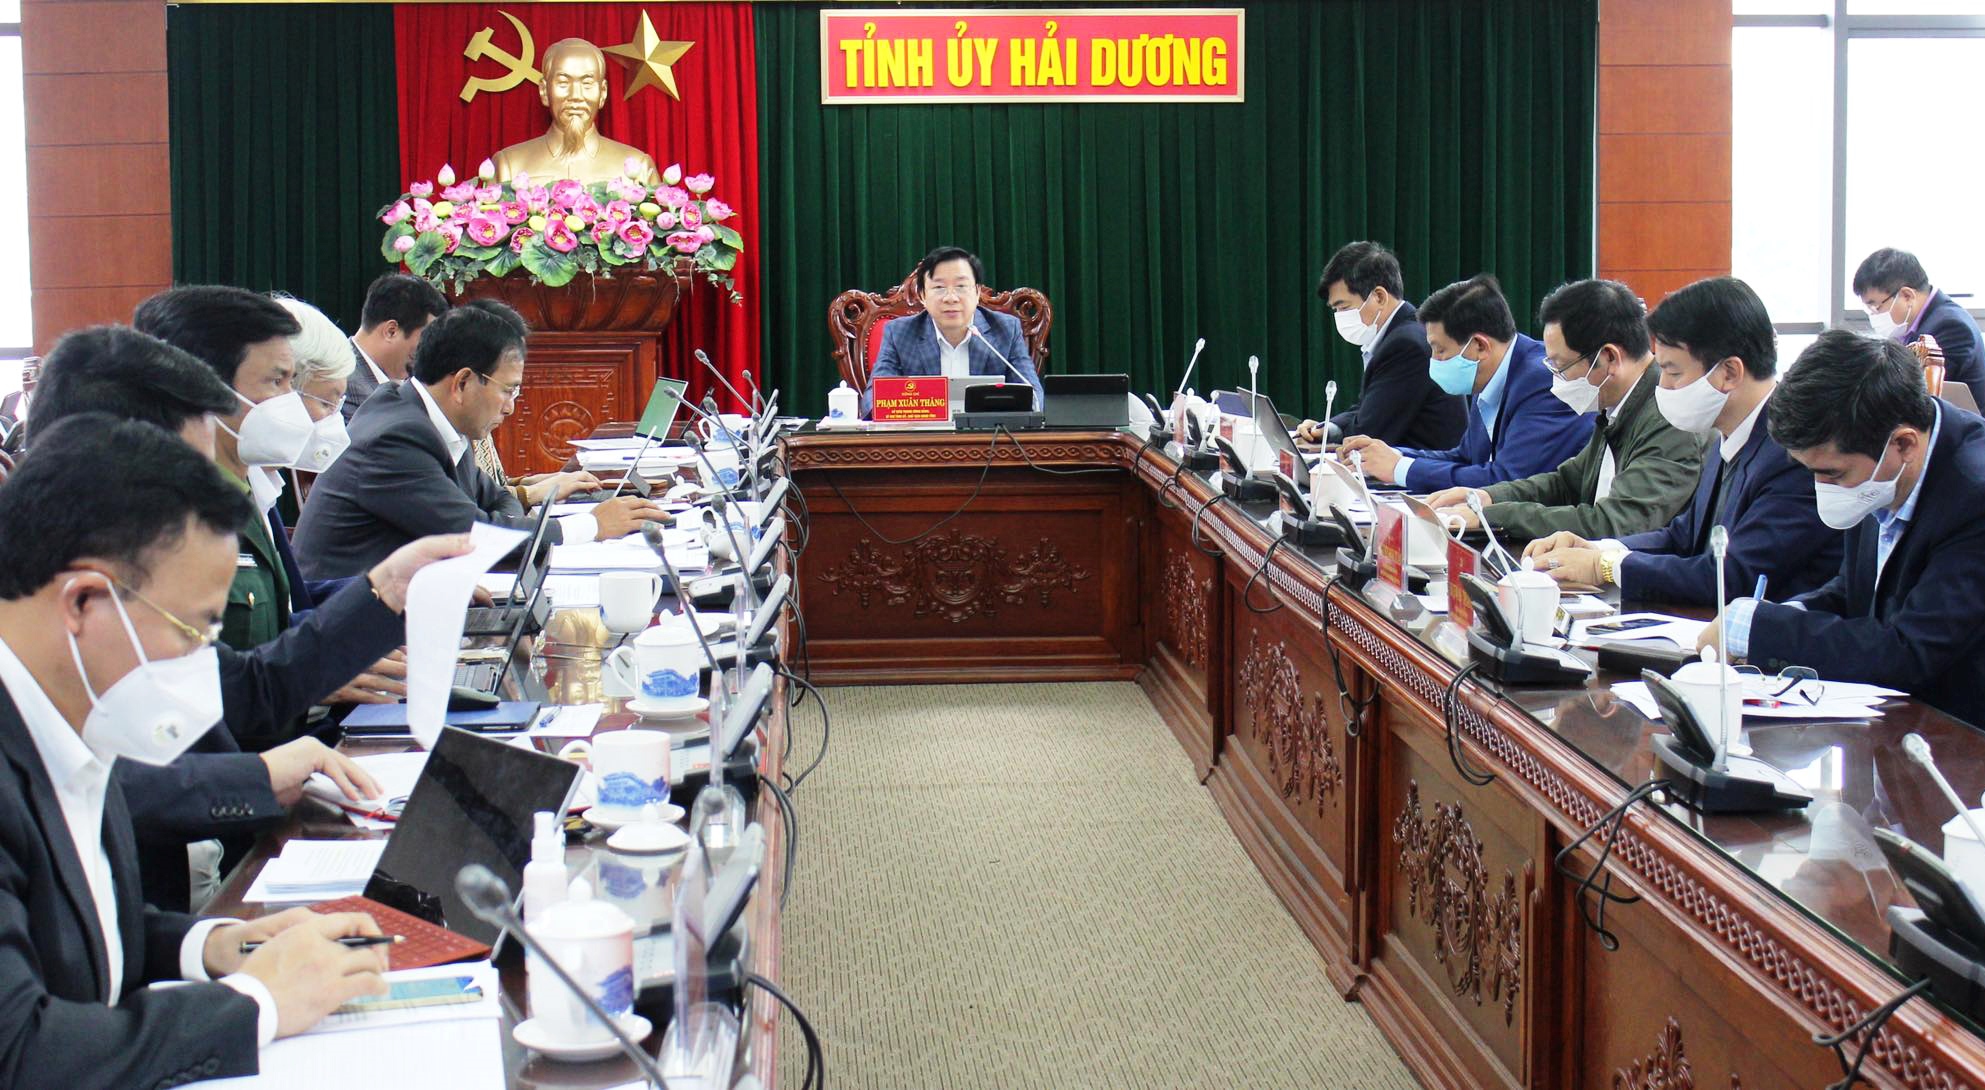 Ông Phạm Xuân Thăng từng chỉ đạo xử lý nghiêm cán bộ liên quan đến sai phạm tại CDC Hải Dương - Ảnh 2.